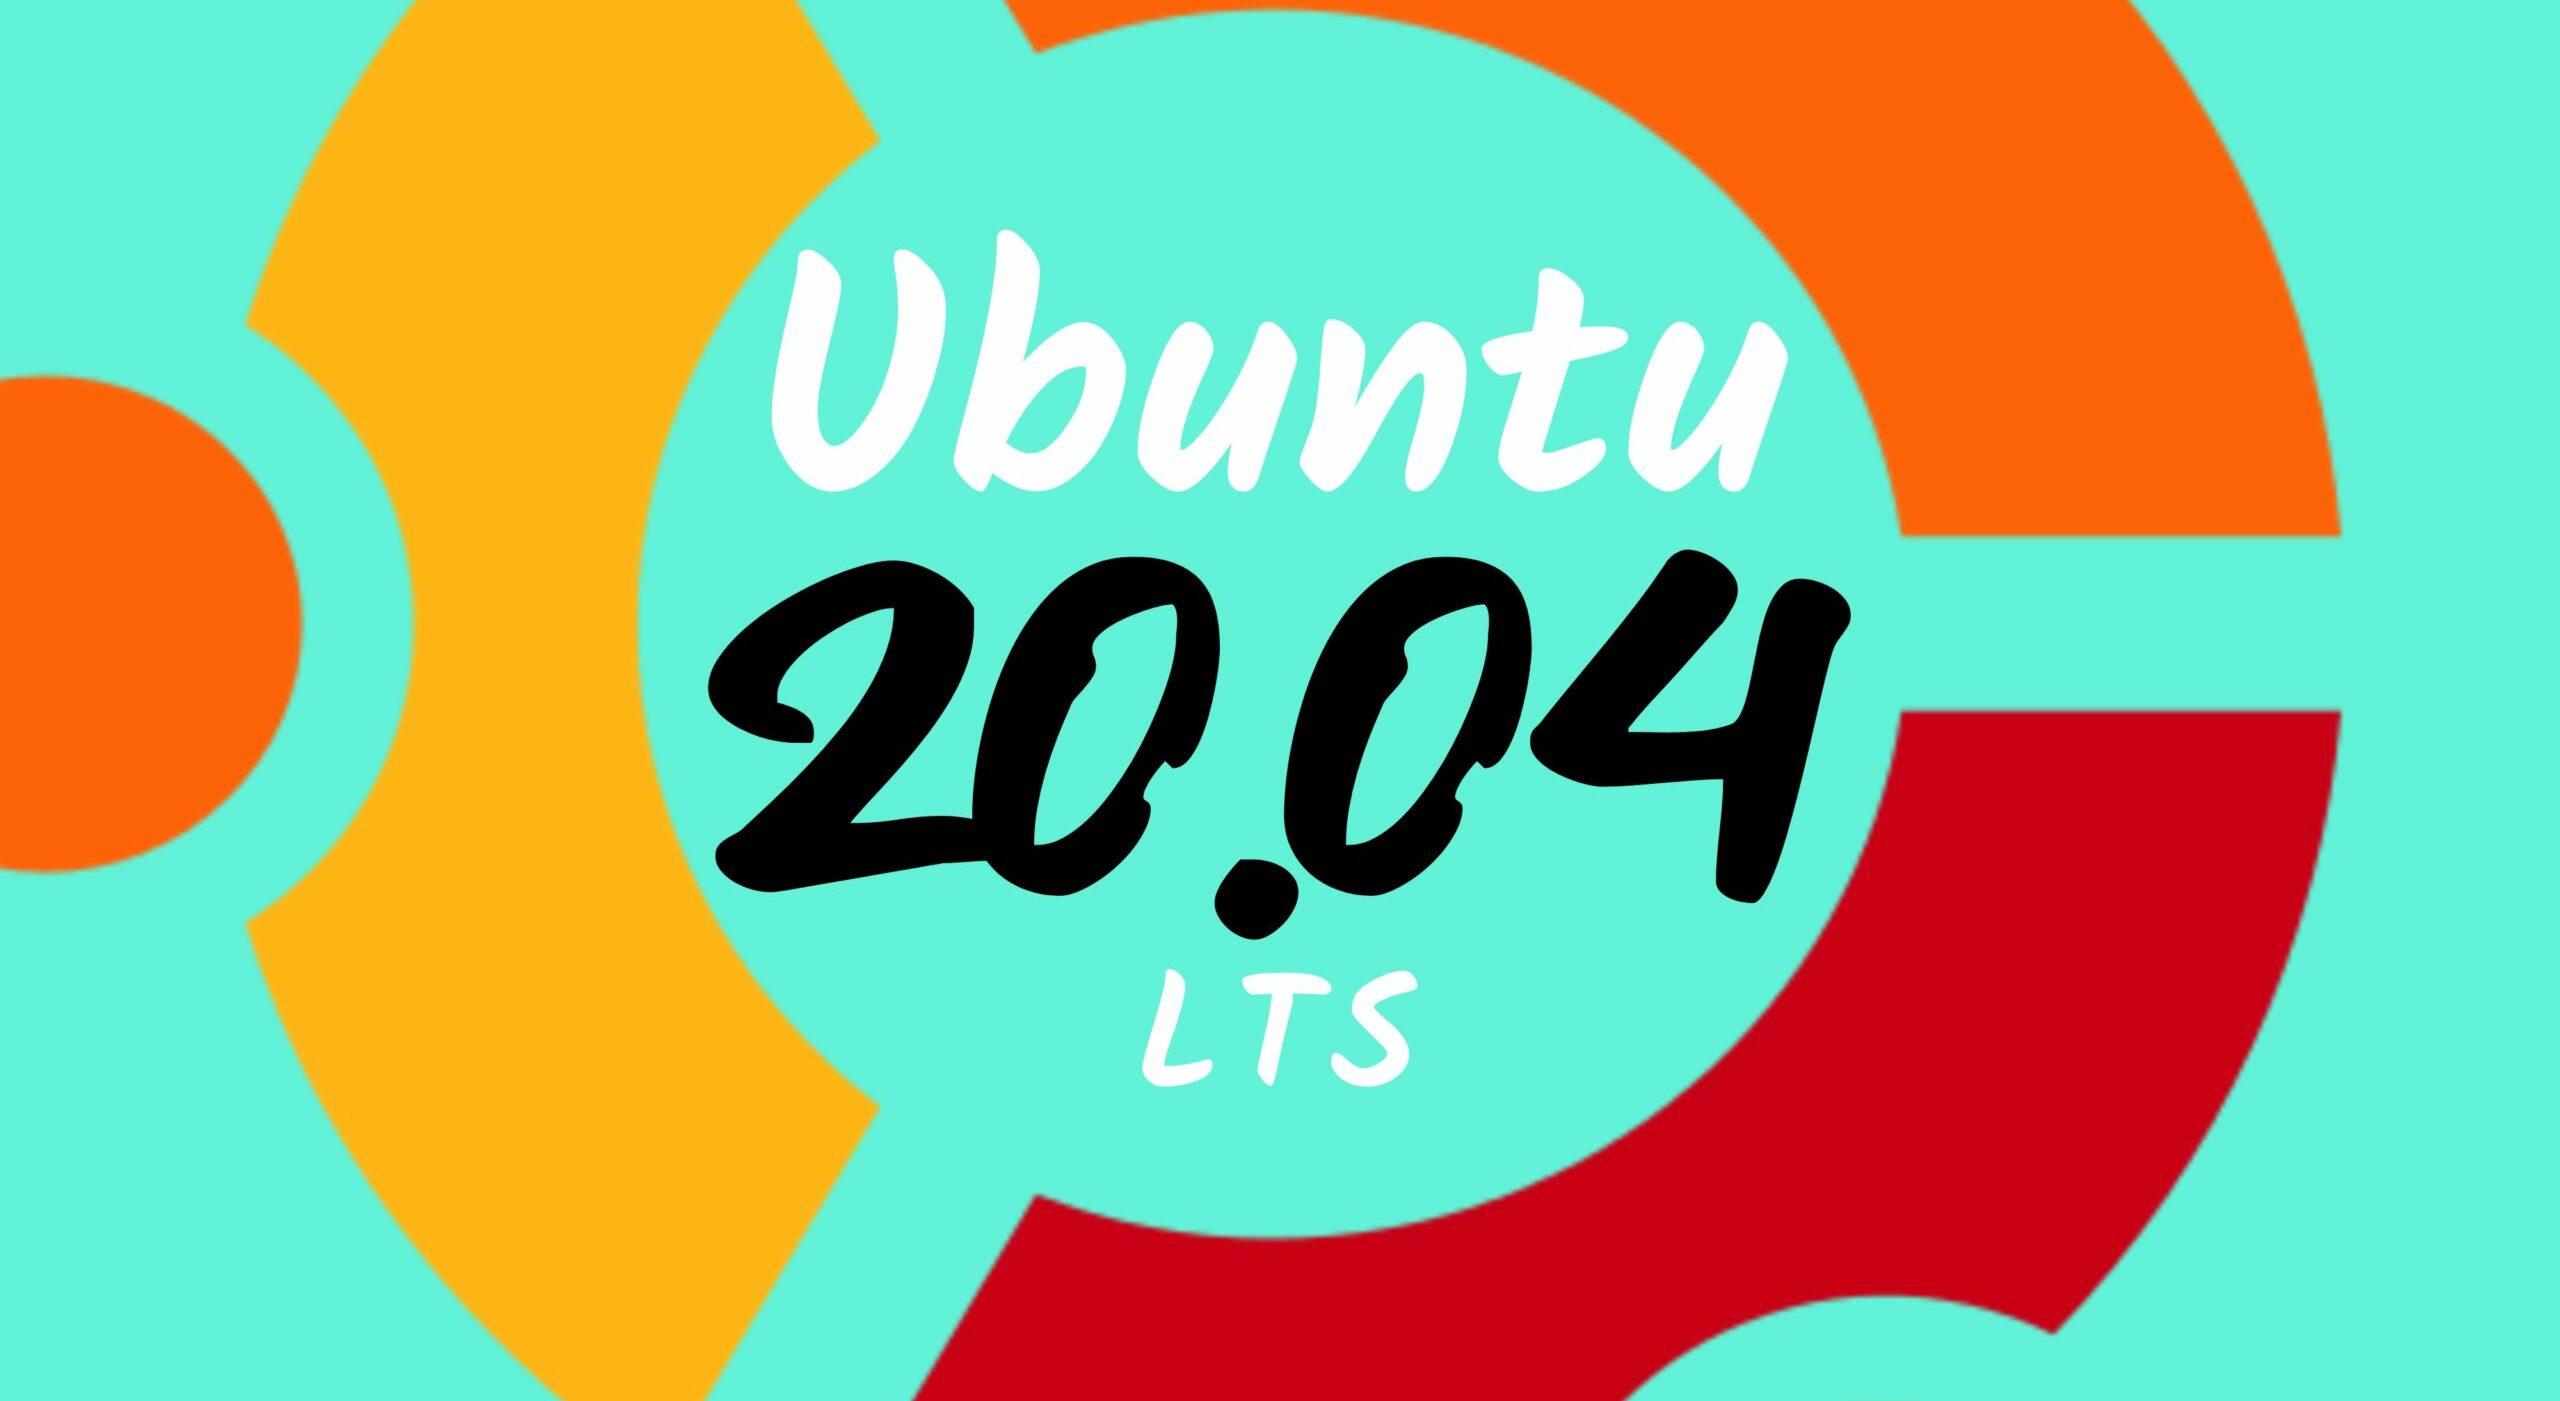 Ubuntu 20.04 LTS - "Ubuntu 20.04 LTS ist da! Die wichtigsten Fakten dazu!"